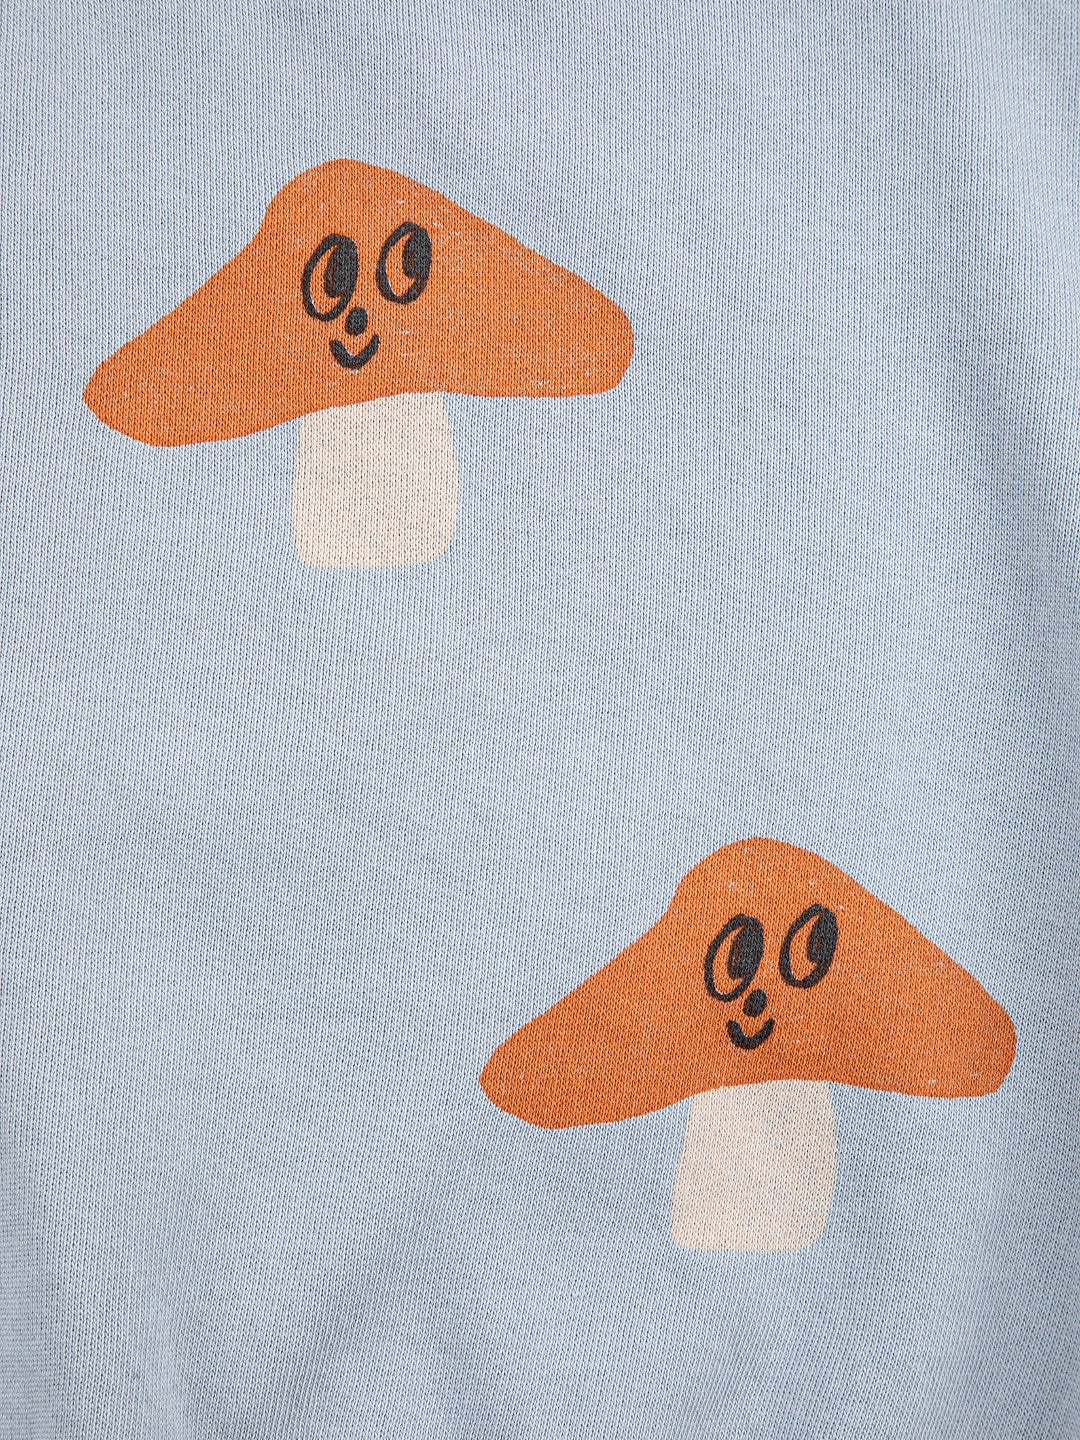 Mr. Mushroom All Over Sweatshirt